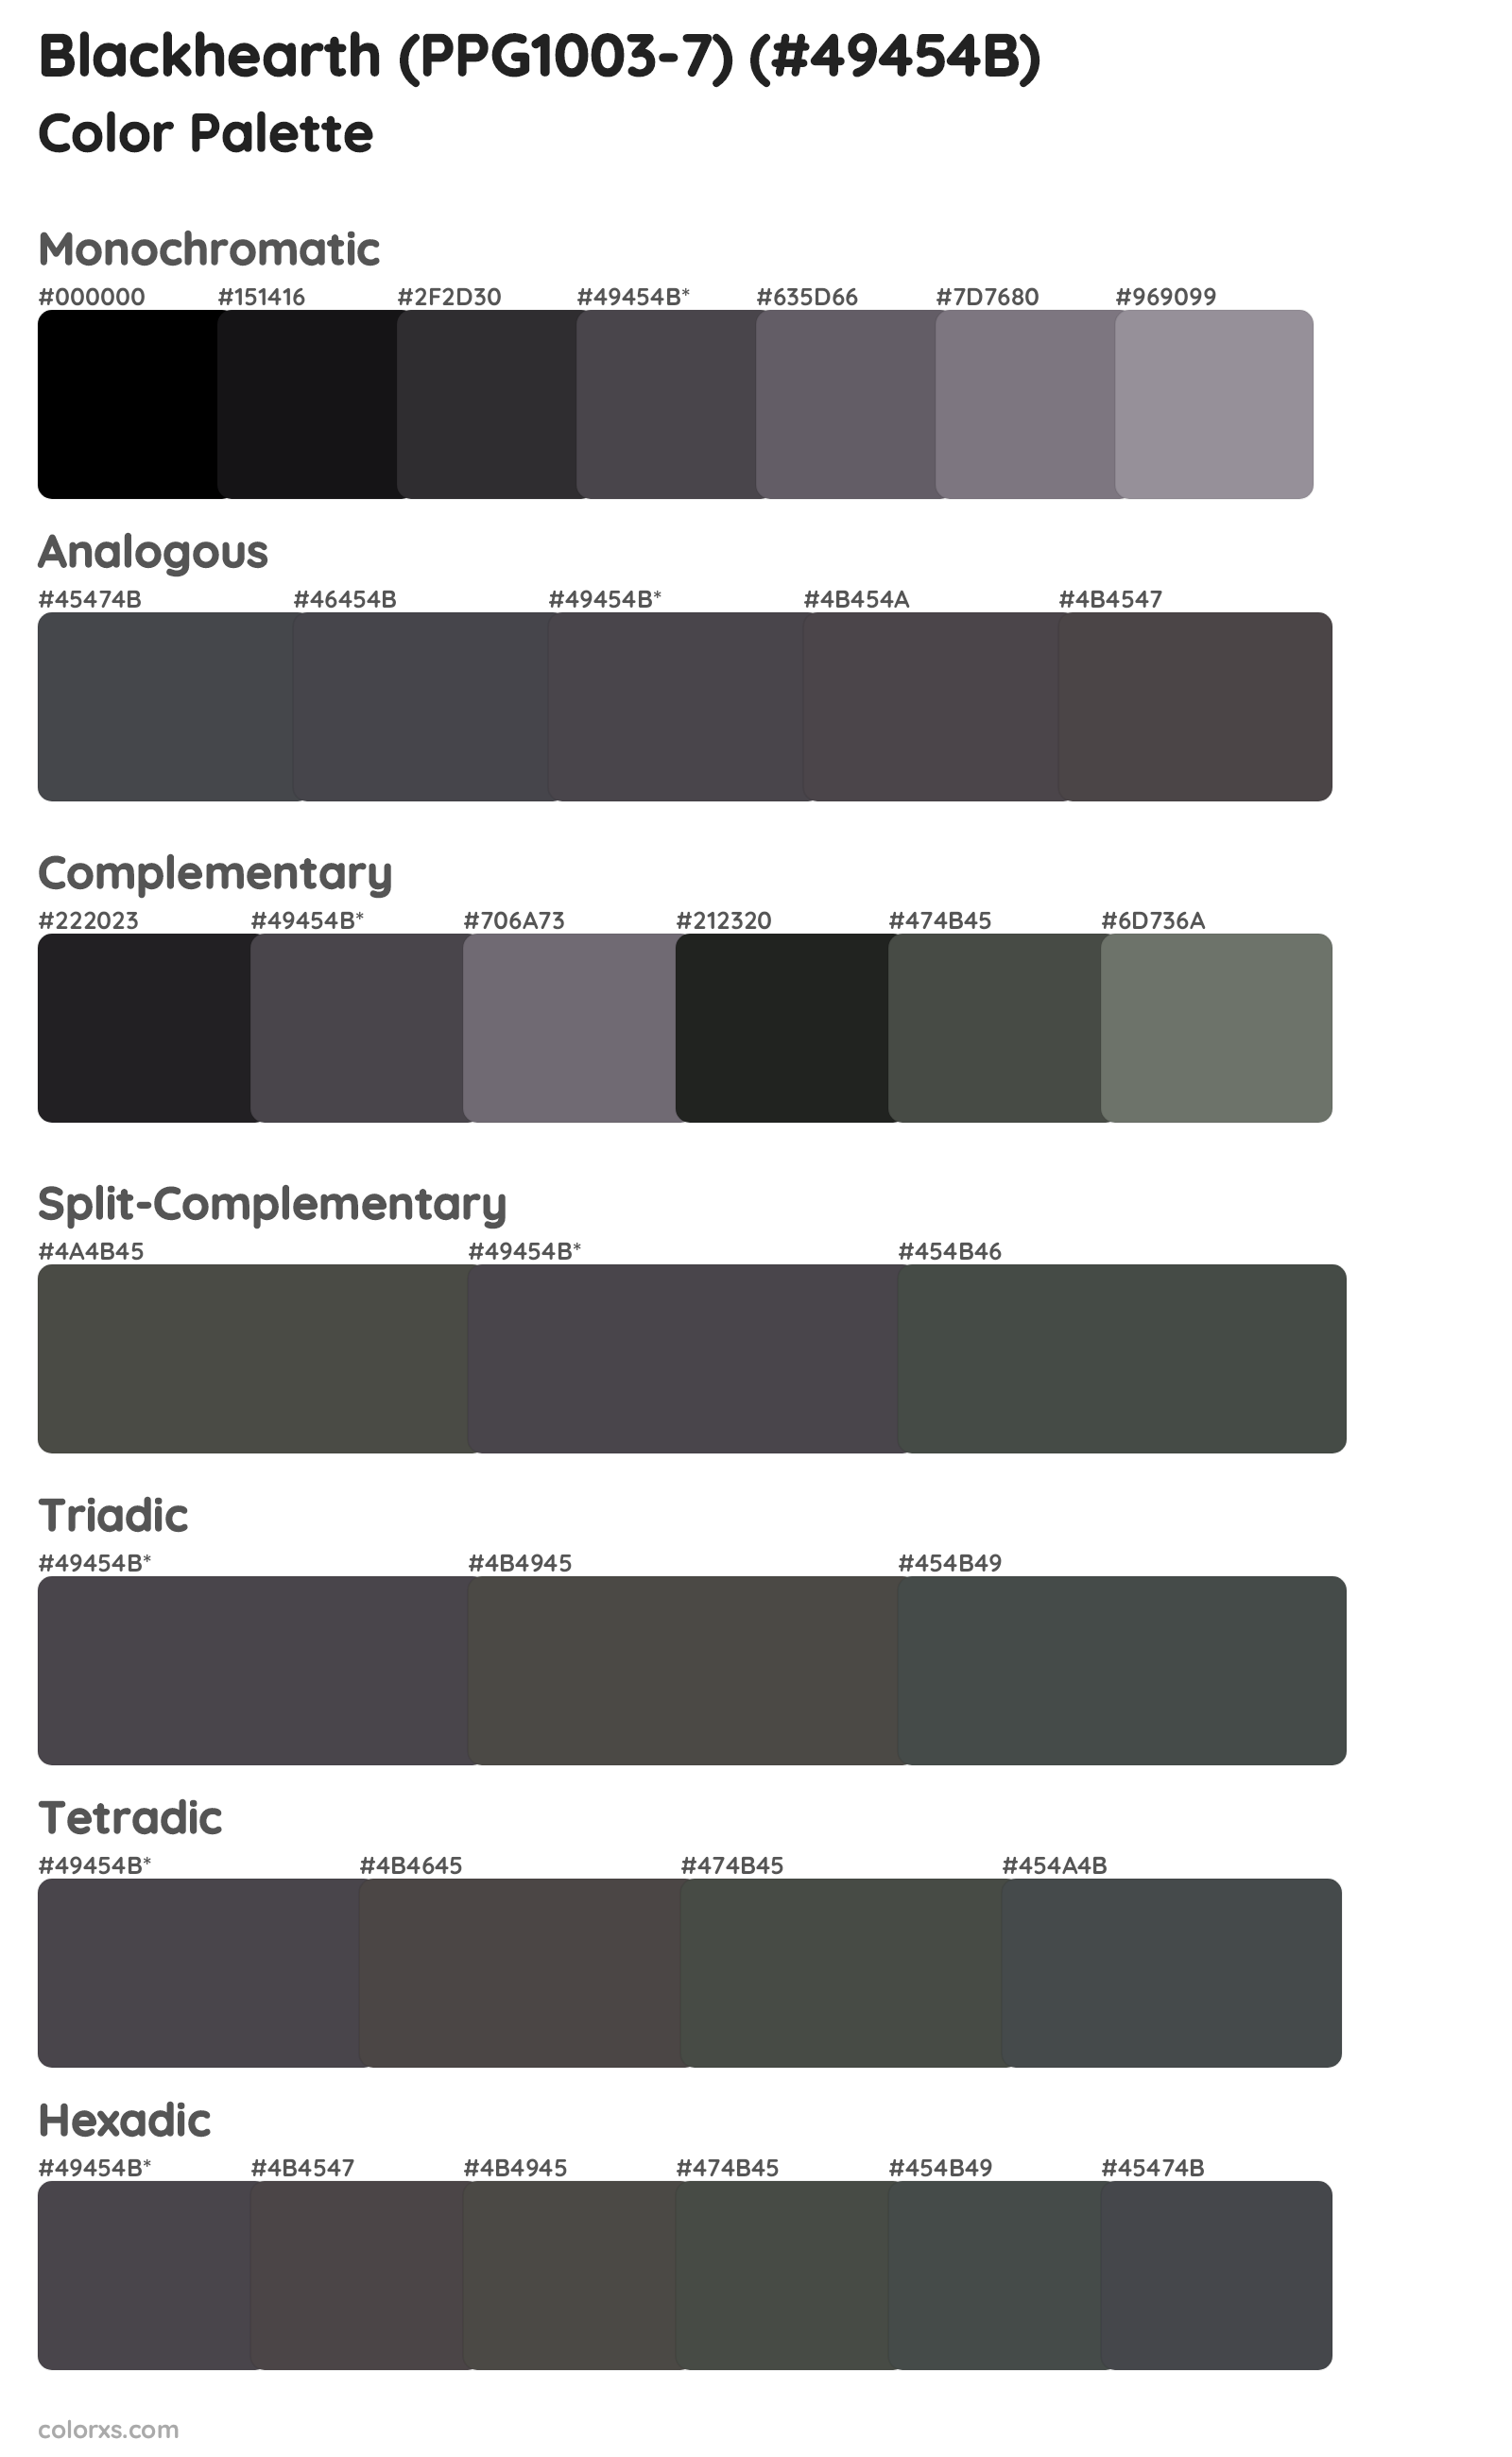 Blackhearth (PPG1003-7) Color Scheme Palettes